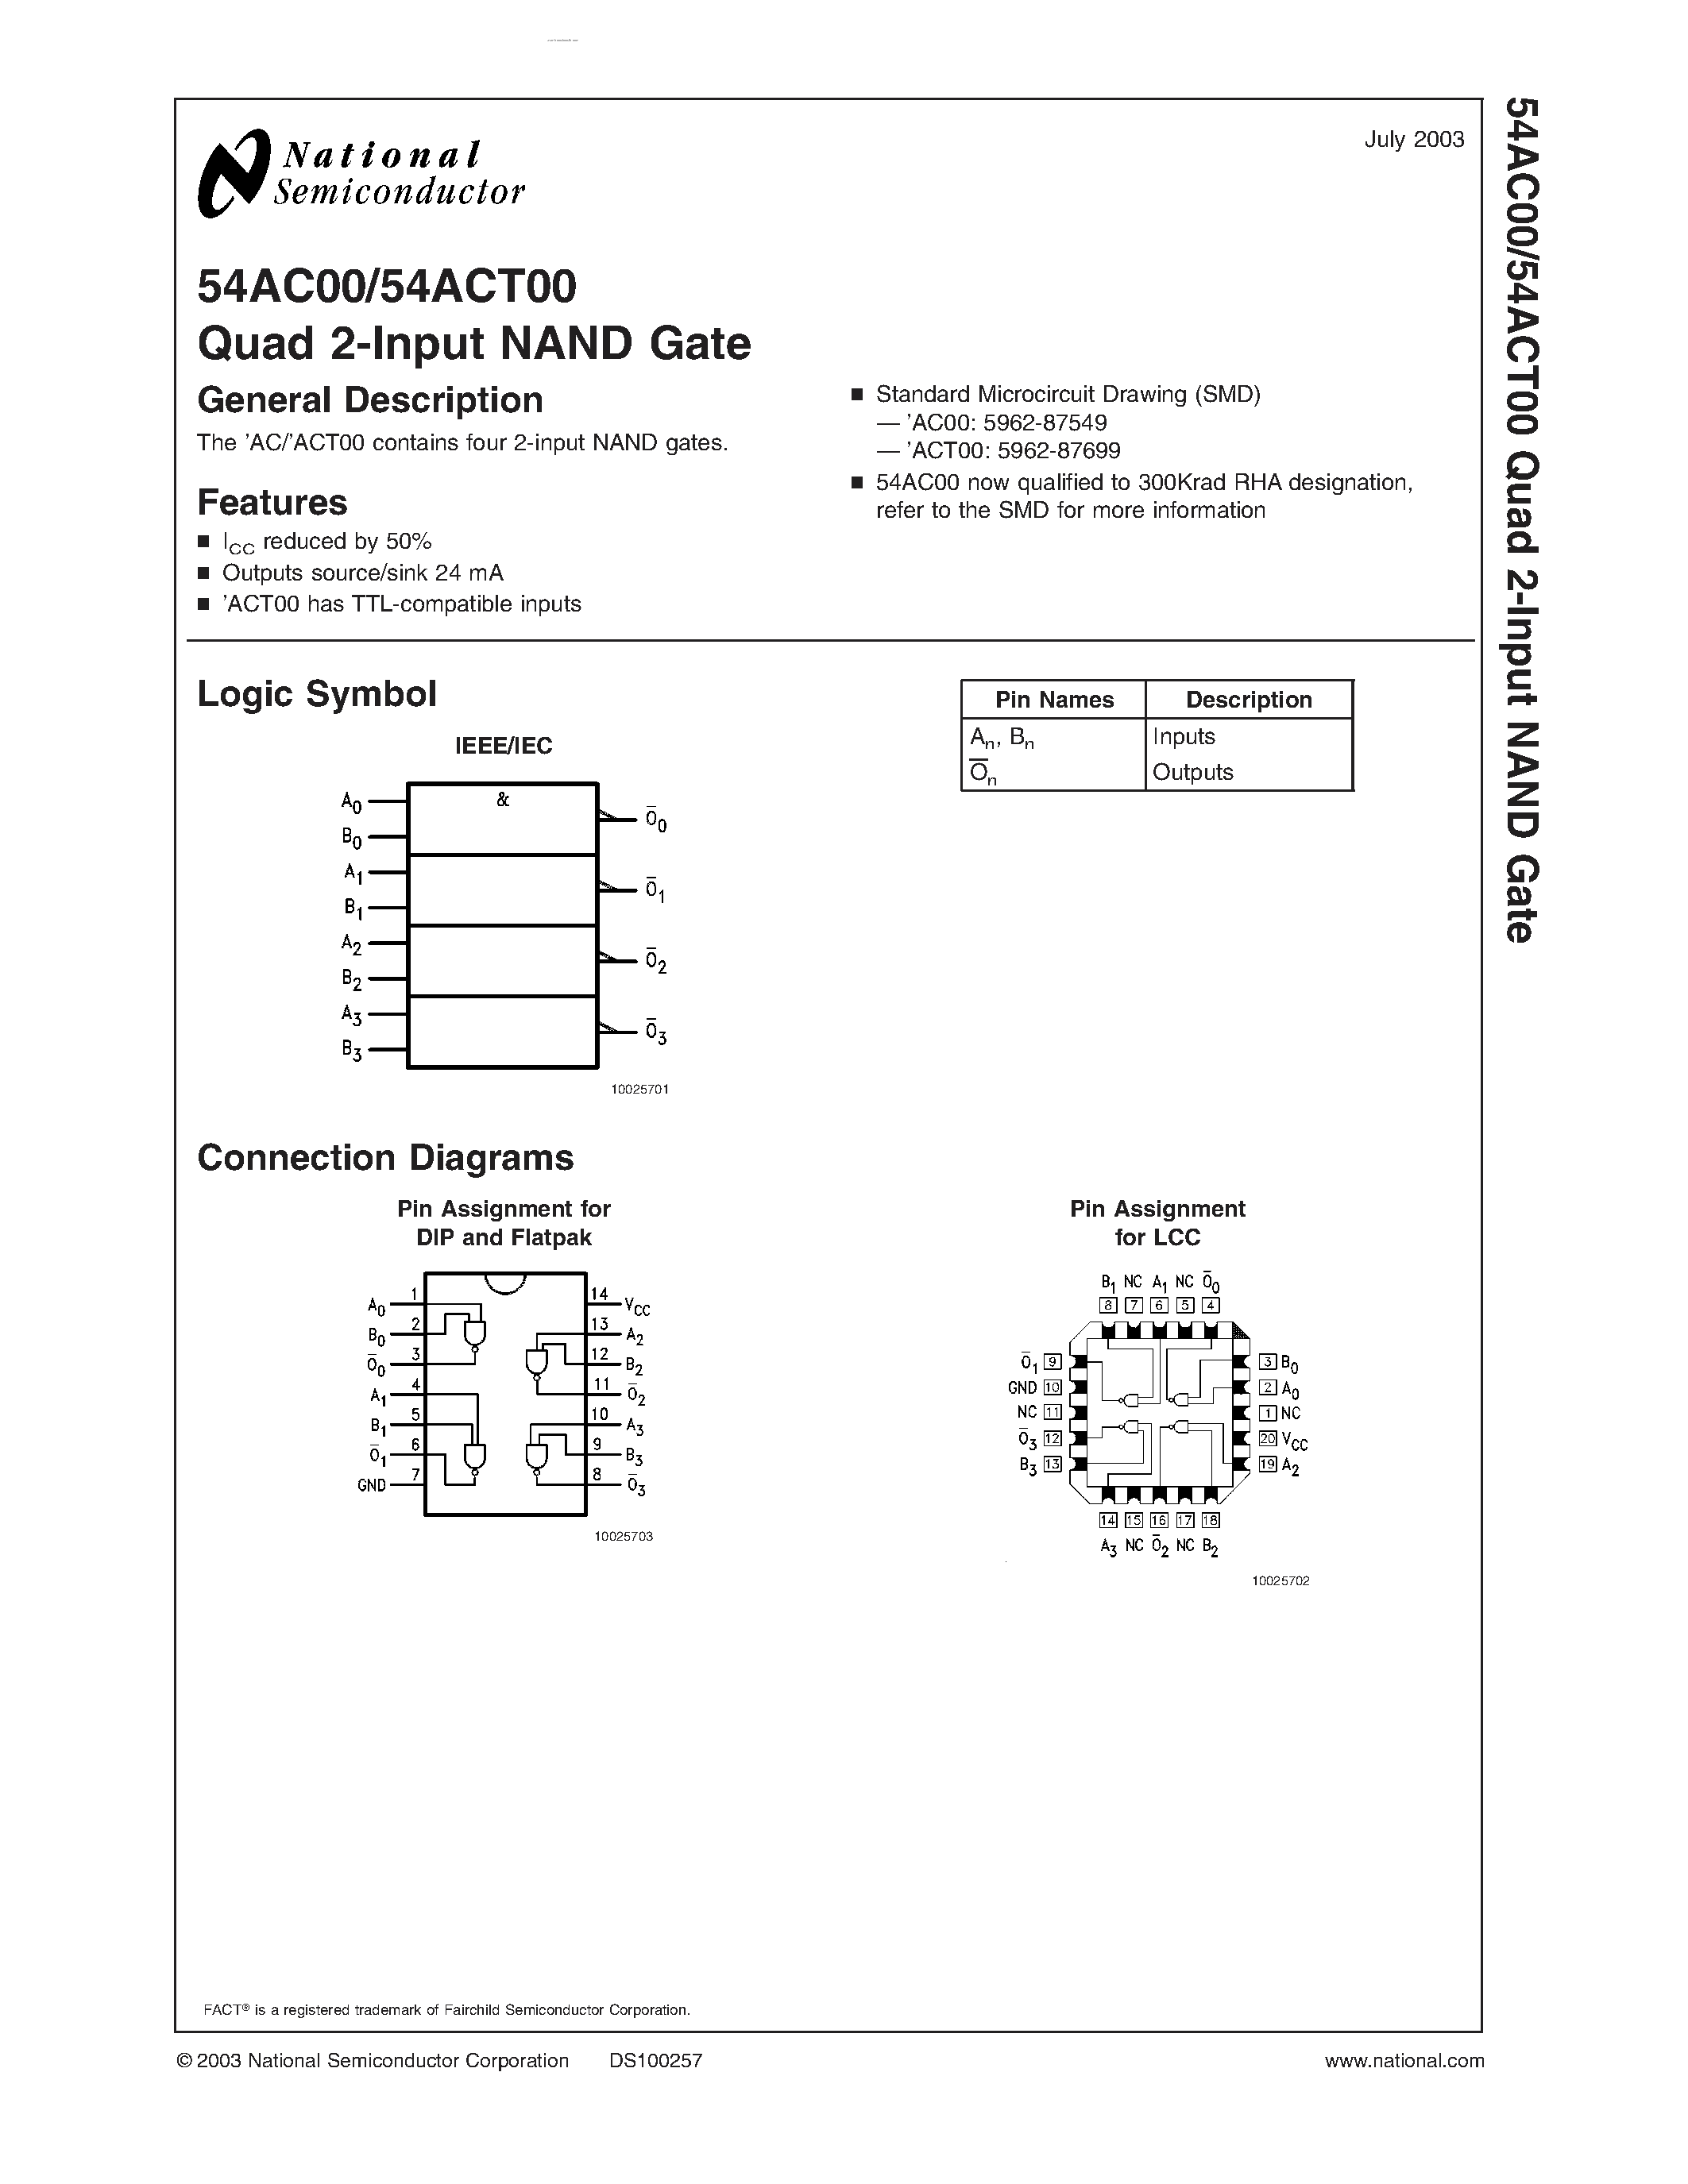 Даташит 54AC00 - Quad 2-Input NAND Gate страница 1